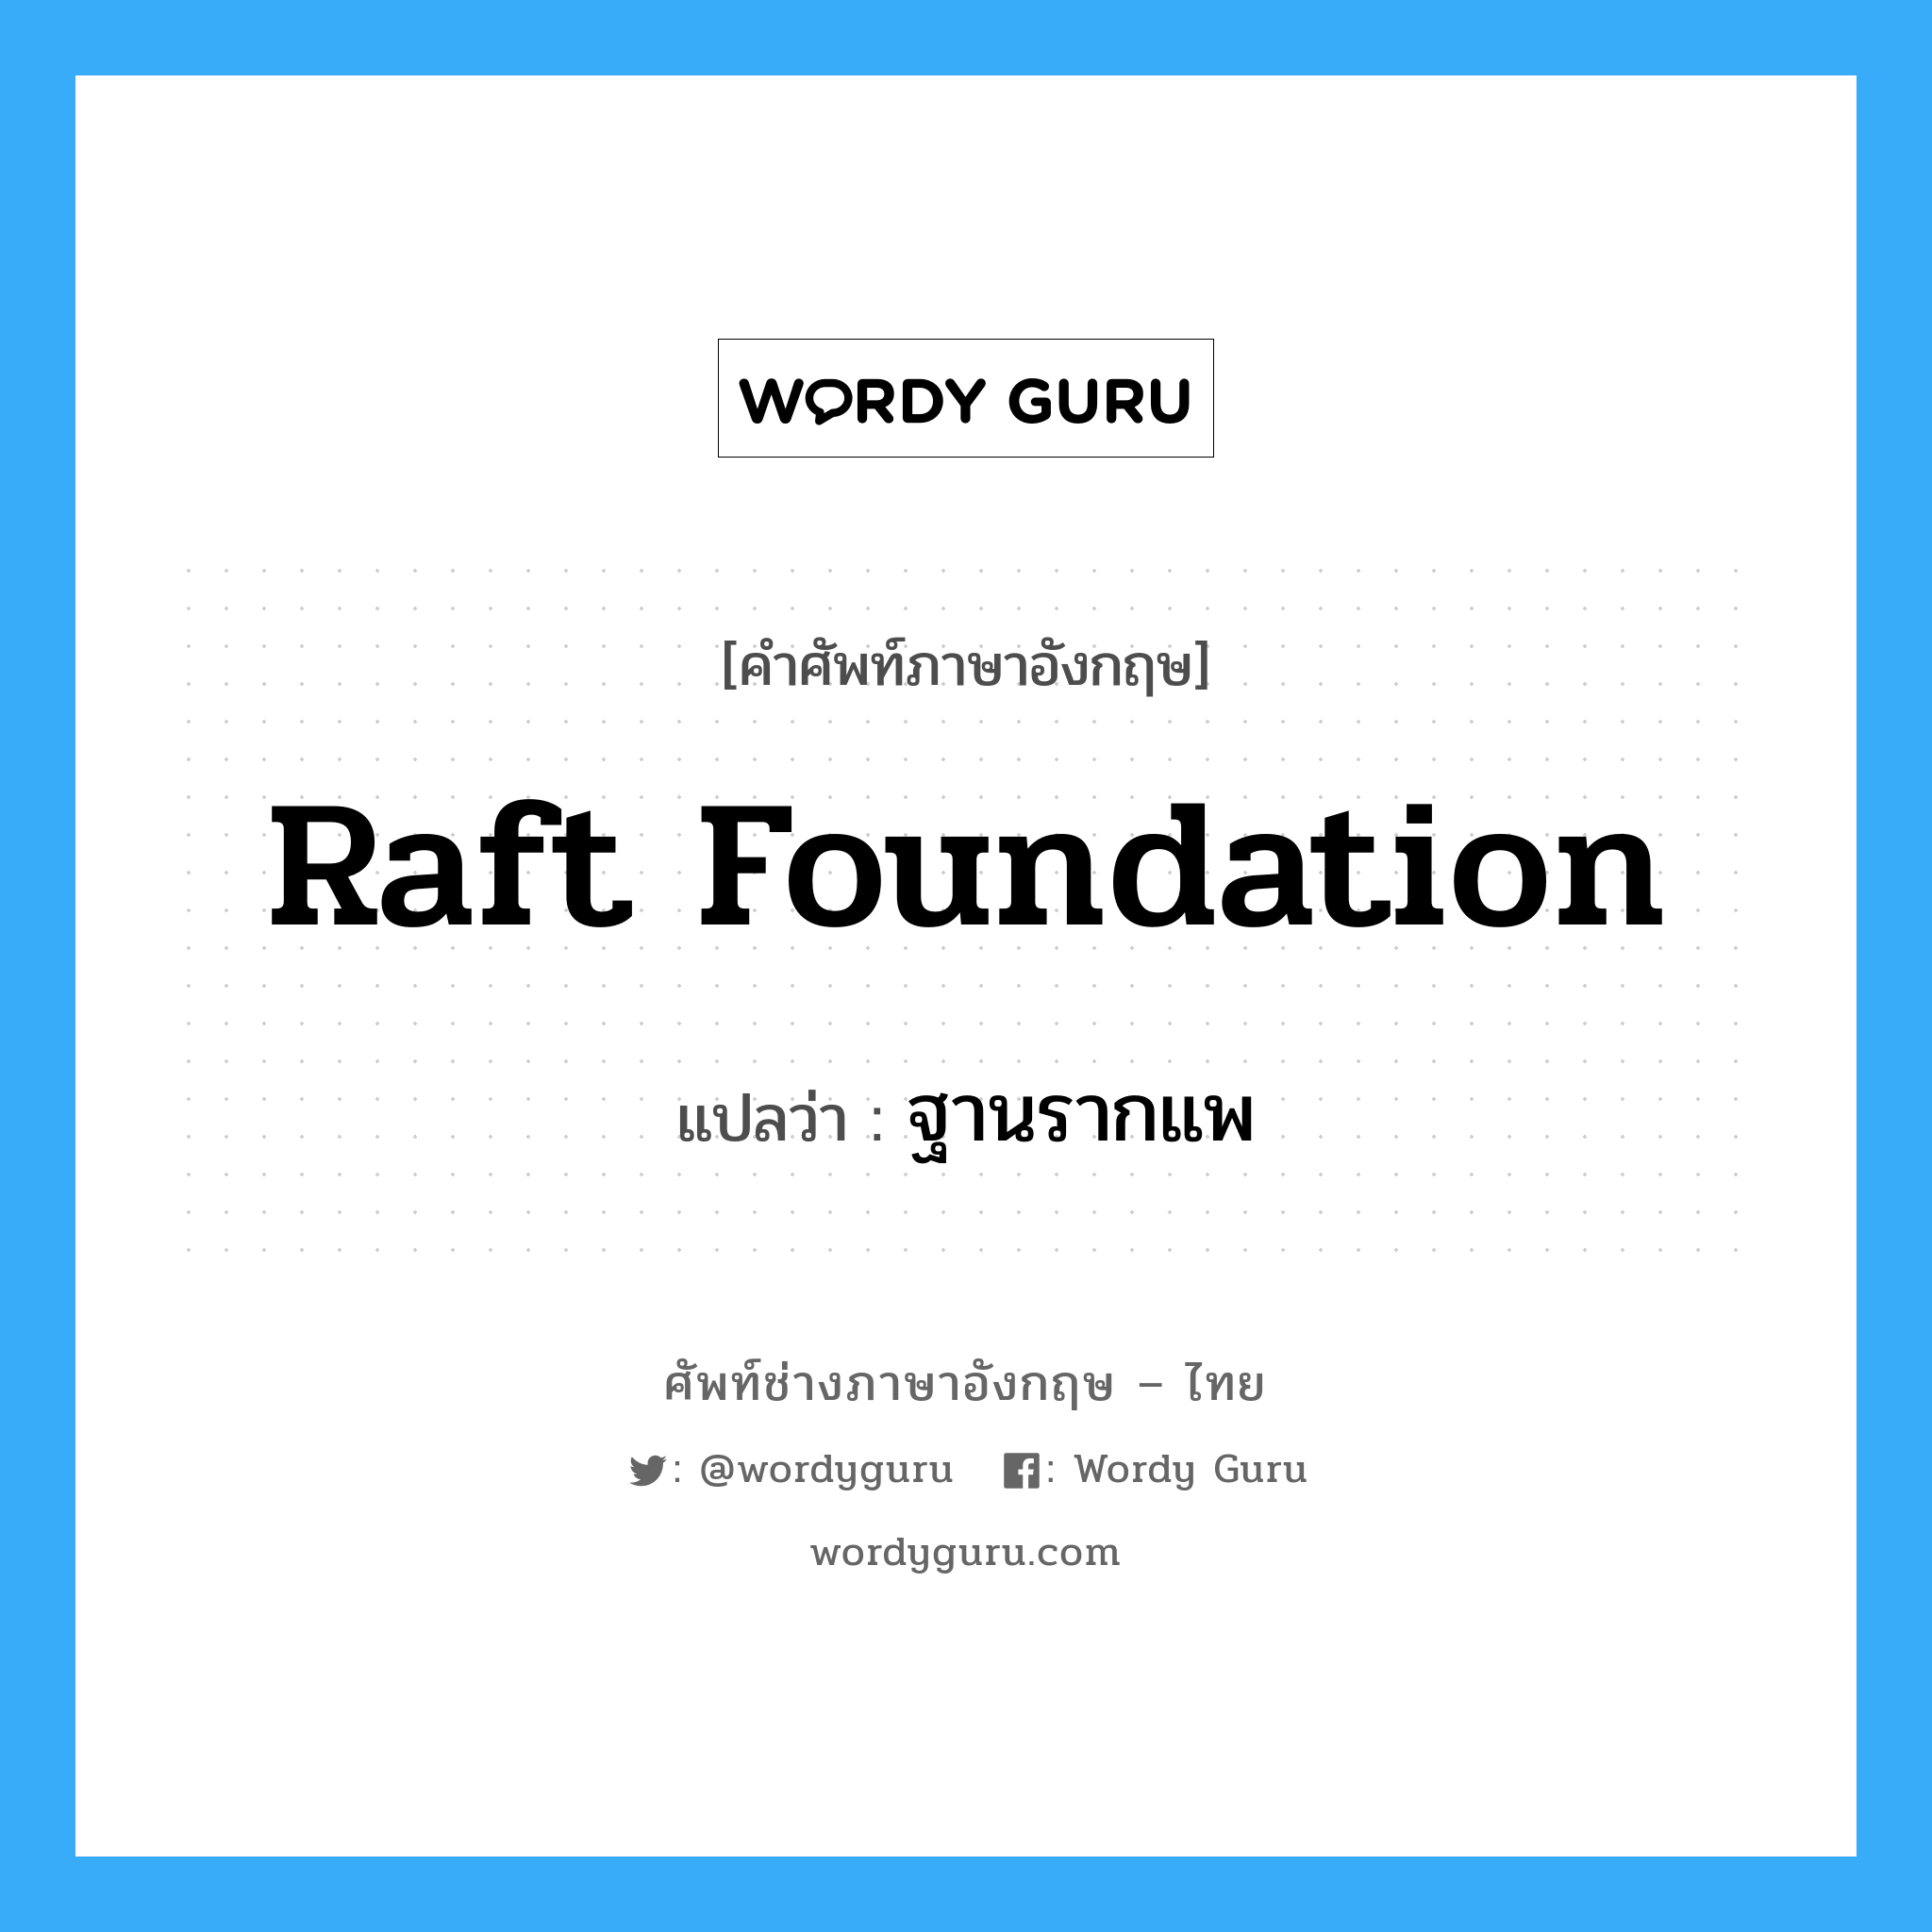 ฐานรากแพ ภาษาอังกฤษ?, คำศัพท์ช่างภาษาอังกฤษ - ไทย ฐานรากแพ คำศัพท์ภาษาอังกฤษ ฐานรากแพ แปลว่า raft foundation